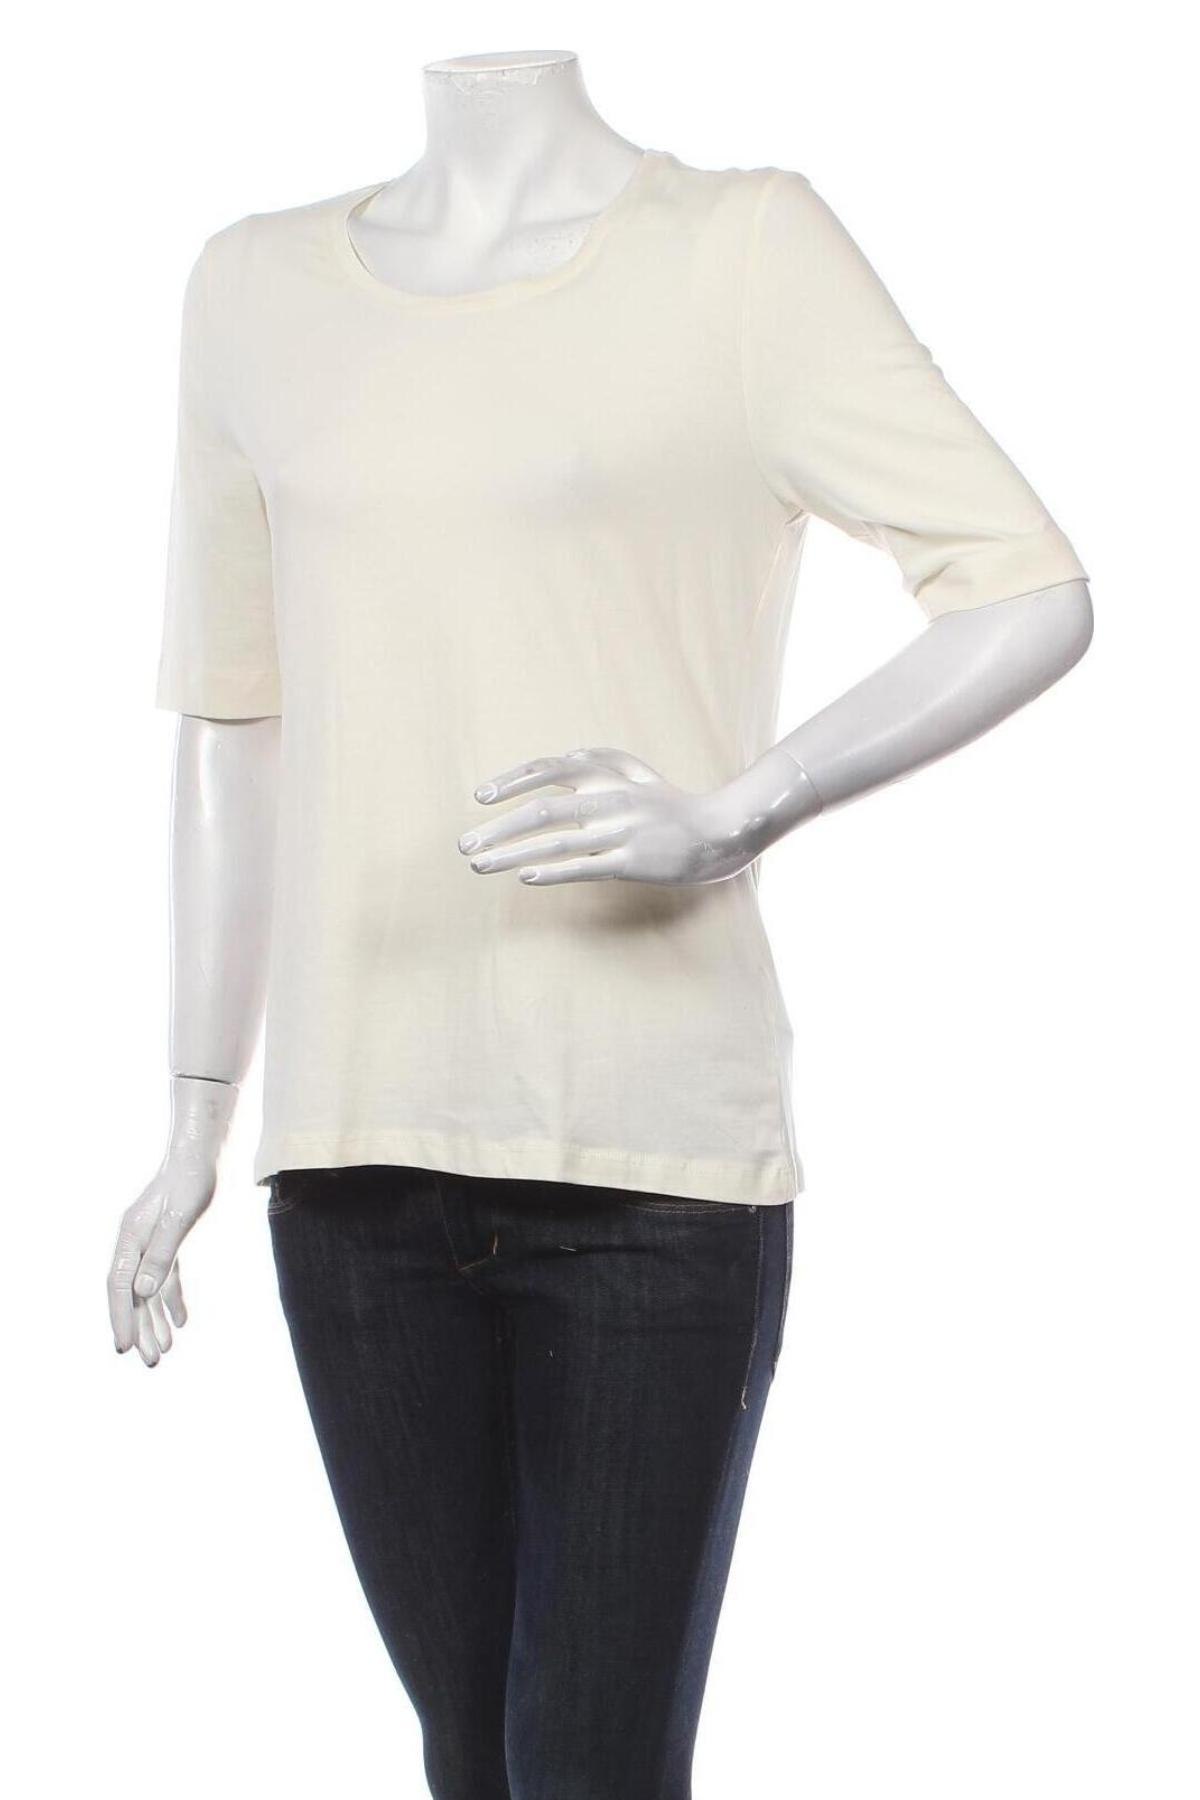 Γυναικεία μπλούζα Montego, Μέγεθος L, Χρώμα  Μπέζ, 95% βαμβάκι, 5% ελαστάνη, Τιμή 24,74 €